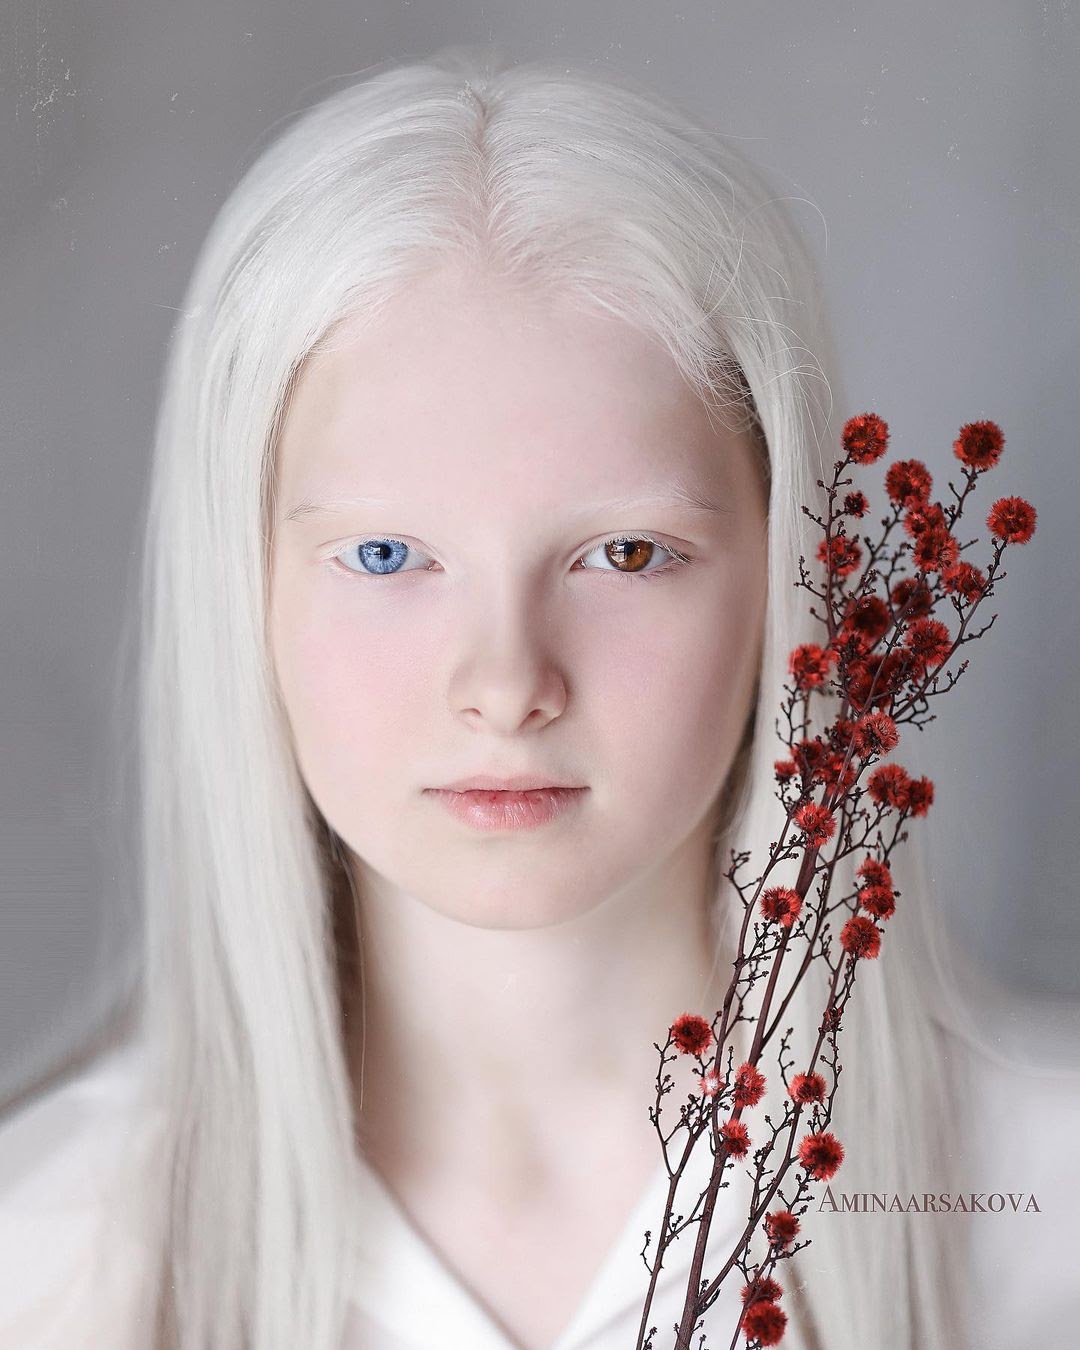 Амина Эпендиева: невероятная девочка-альбинос с разноцветными глазами из Чечни. Как выглядит сегодня и потеряла ли красоту 1